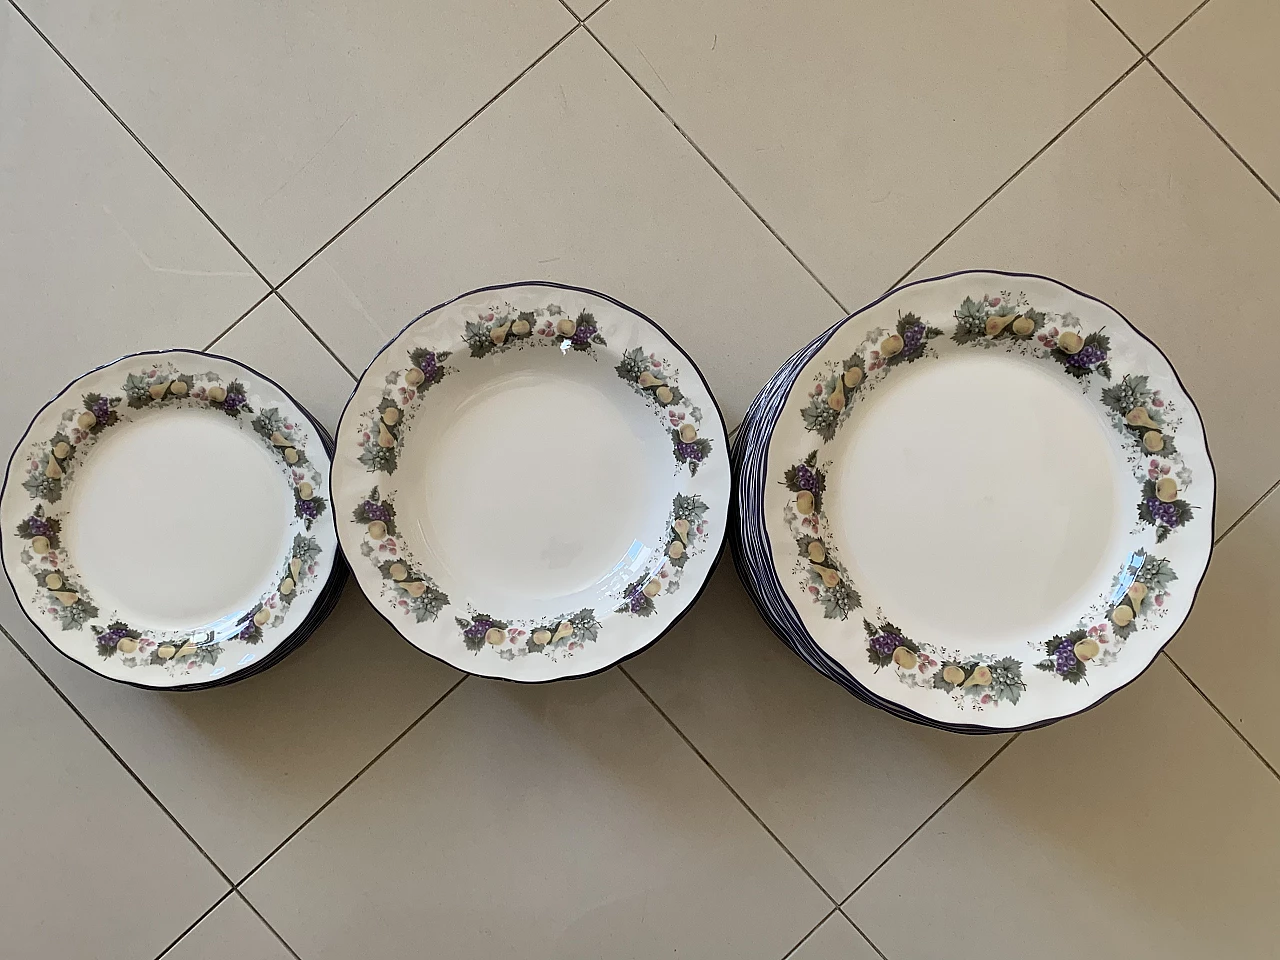 Royal Doulton porcelain plates set with floral decoration, 1990s 12